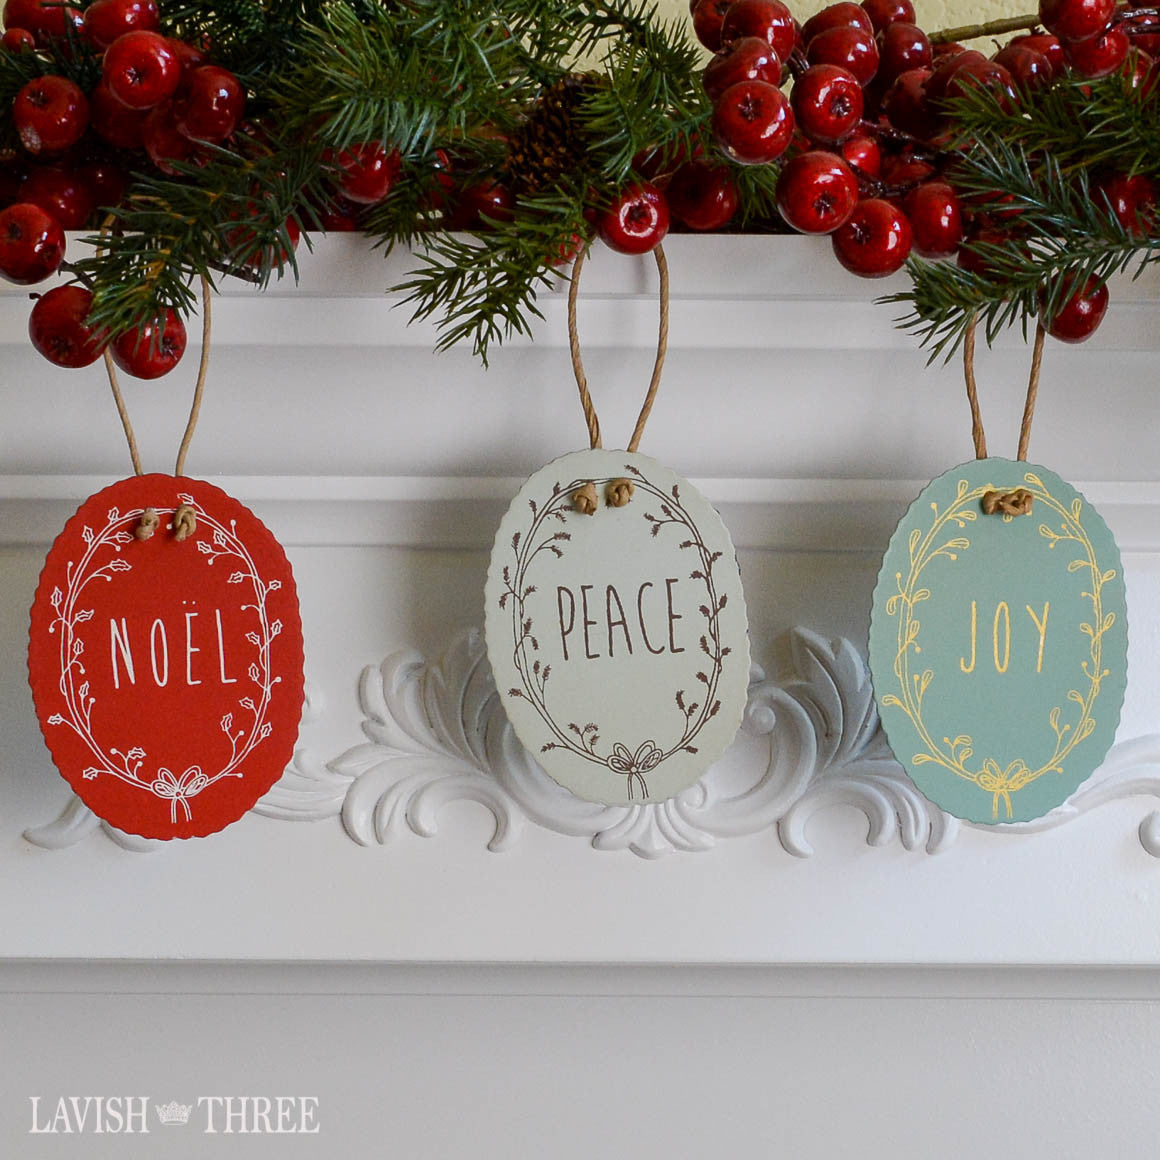 Tin holiday christmas tree ornaments in Noel, Peace & Joy lavish three 3